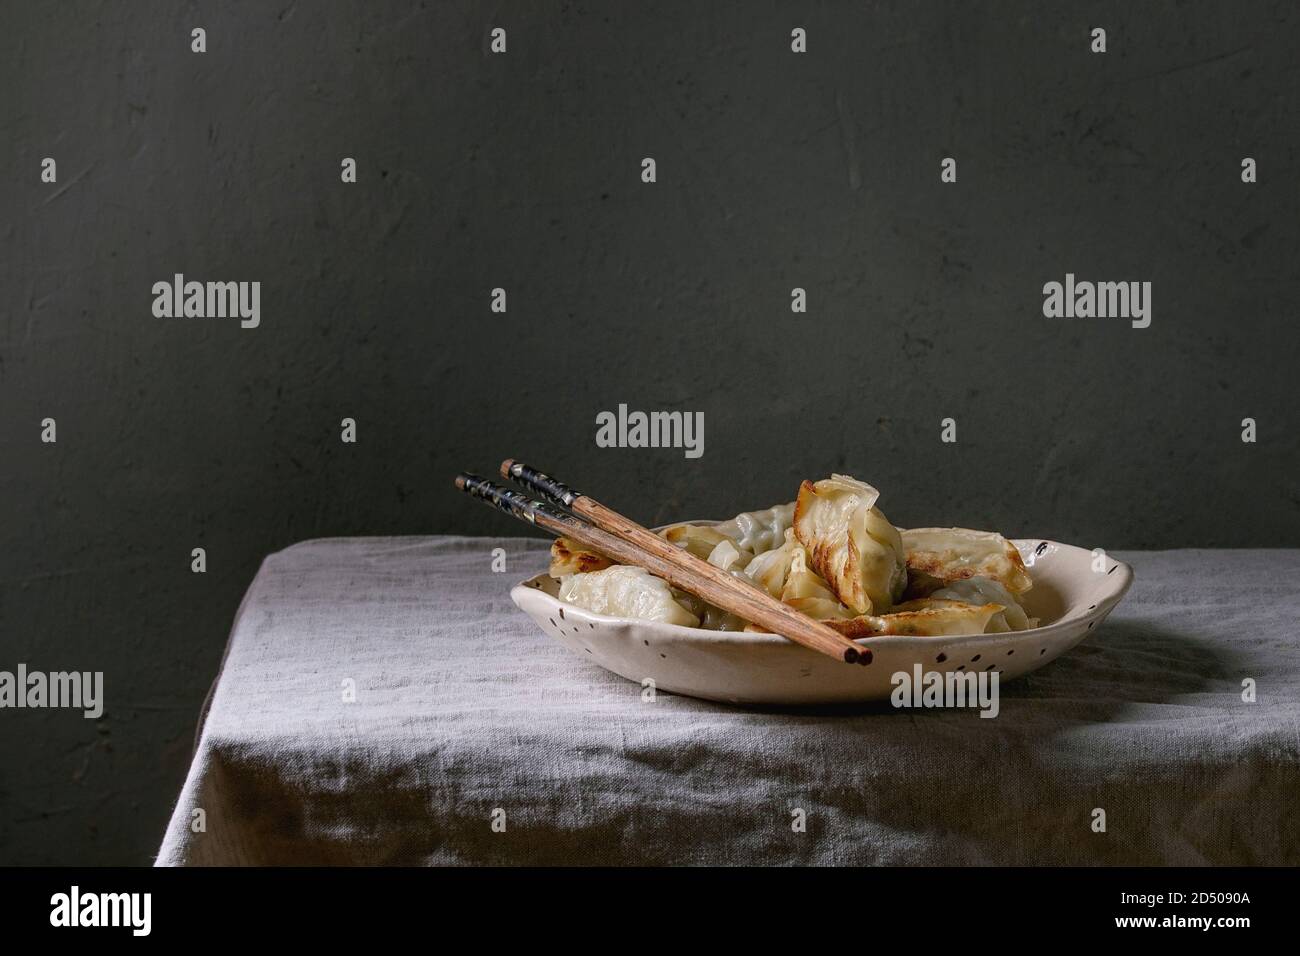 Les Gyozas frits boulettes asiatiques potstickers dans une plaque en céramique blanc servi avec des baguettes plus , tapis de table. Dîner asiatique Banque D'Images